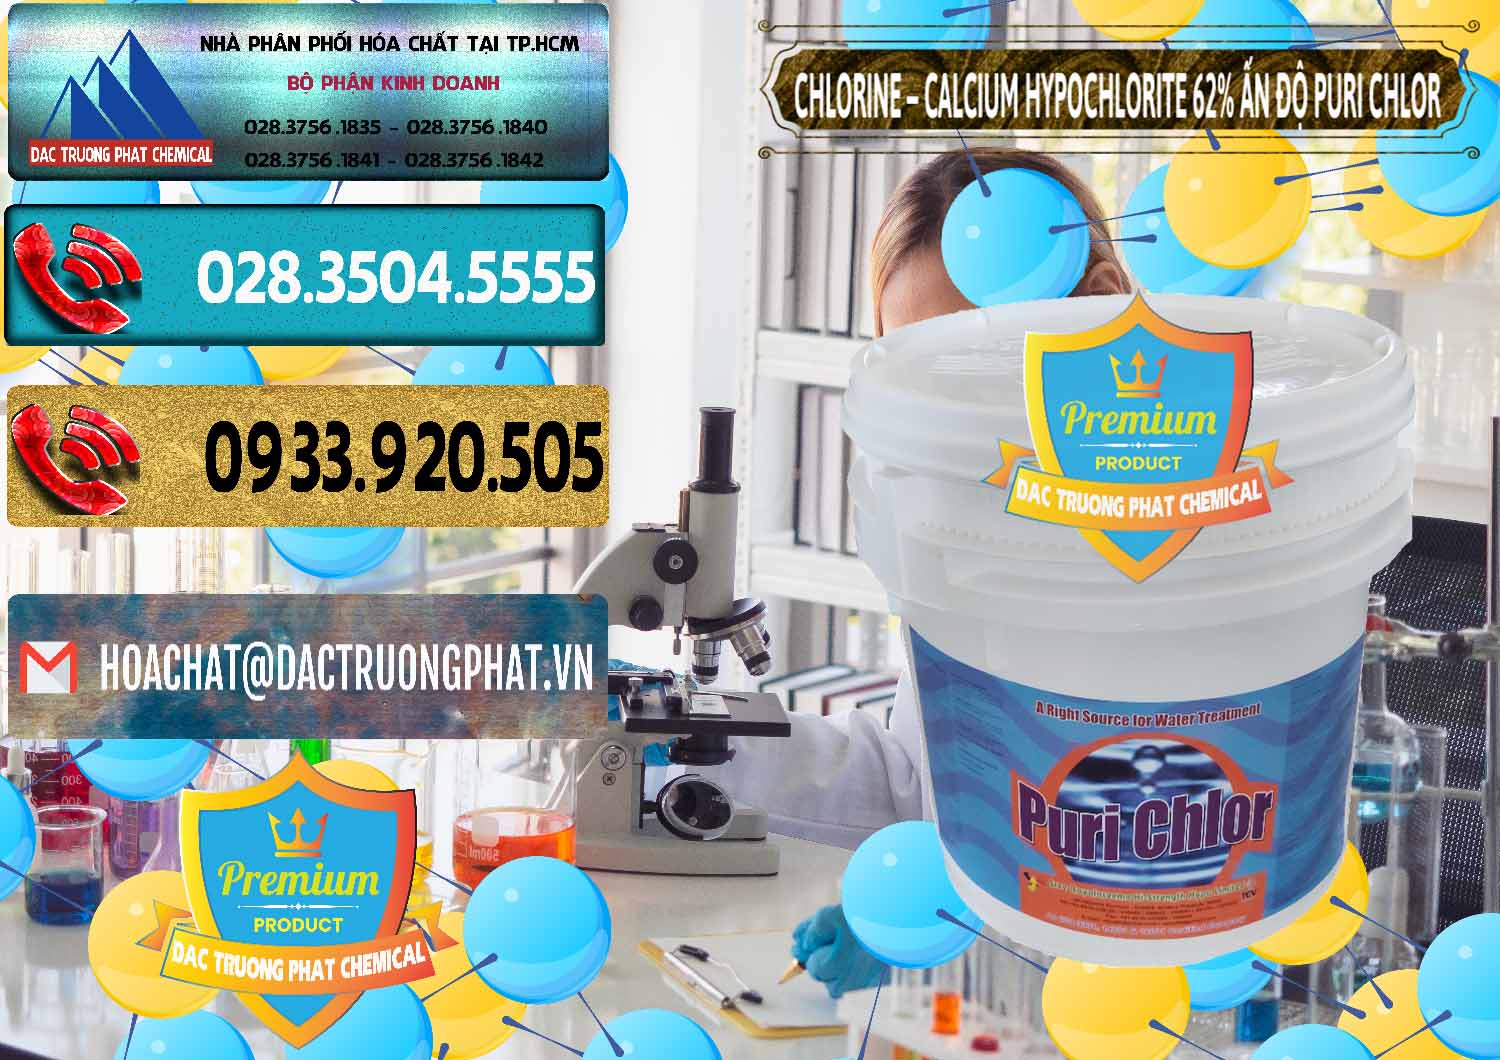 Đơn vị bán và cung ứng Chlorine – Clorin 62% Puri Chlo Ấn Độ India - 0052 - Cty nhập khẩu - phân phối hóa chất tại TP.HCM - hoachatdetnhuom.com